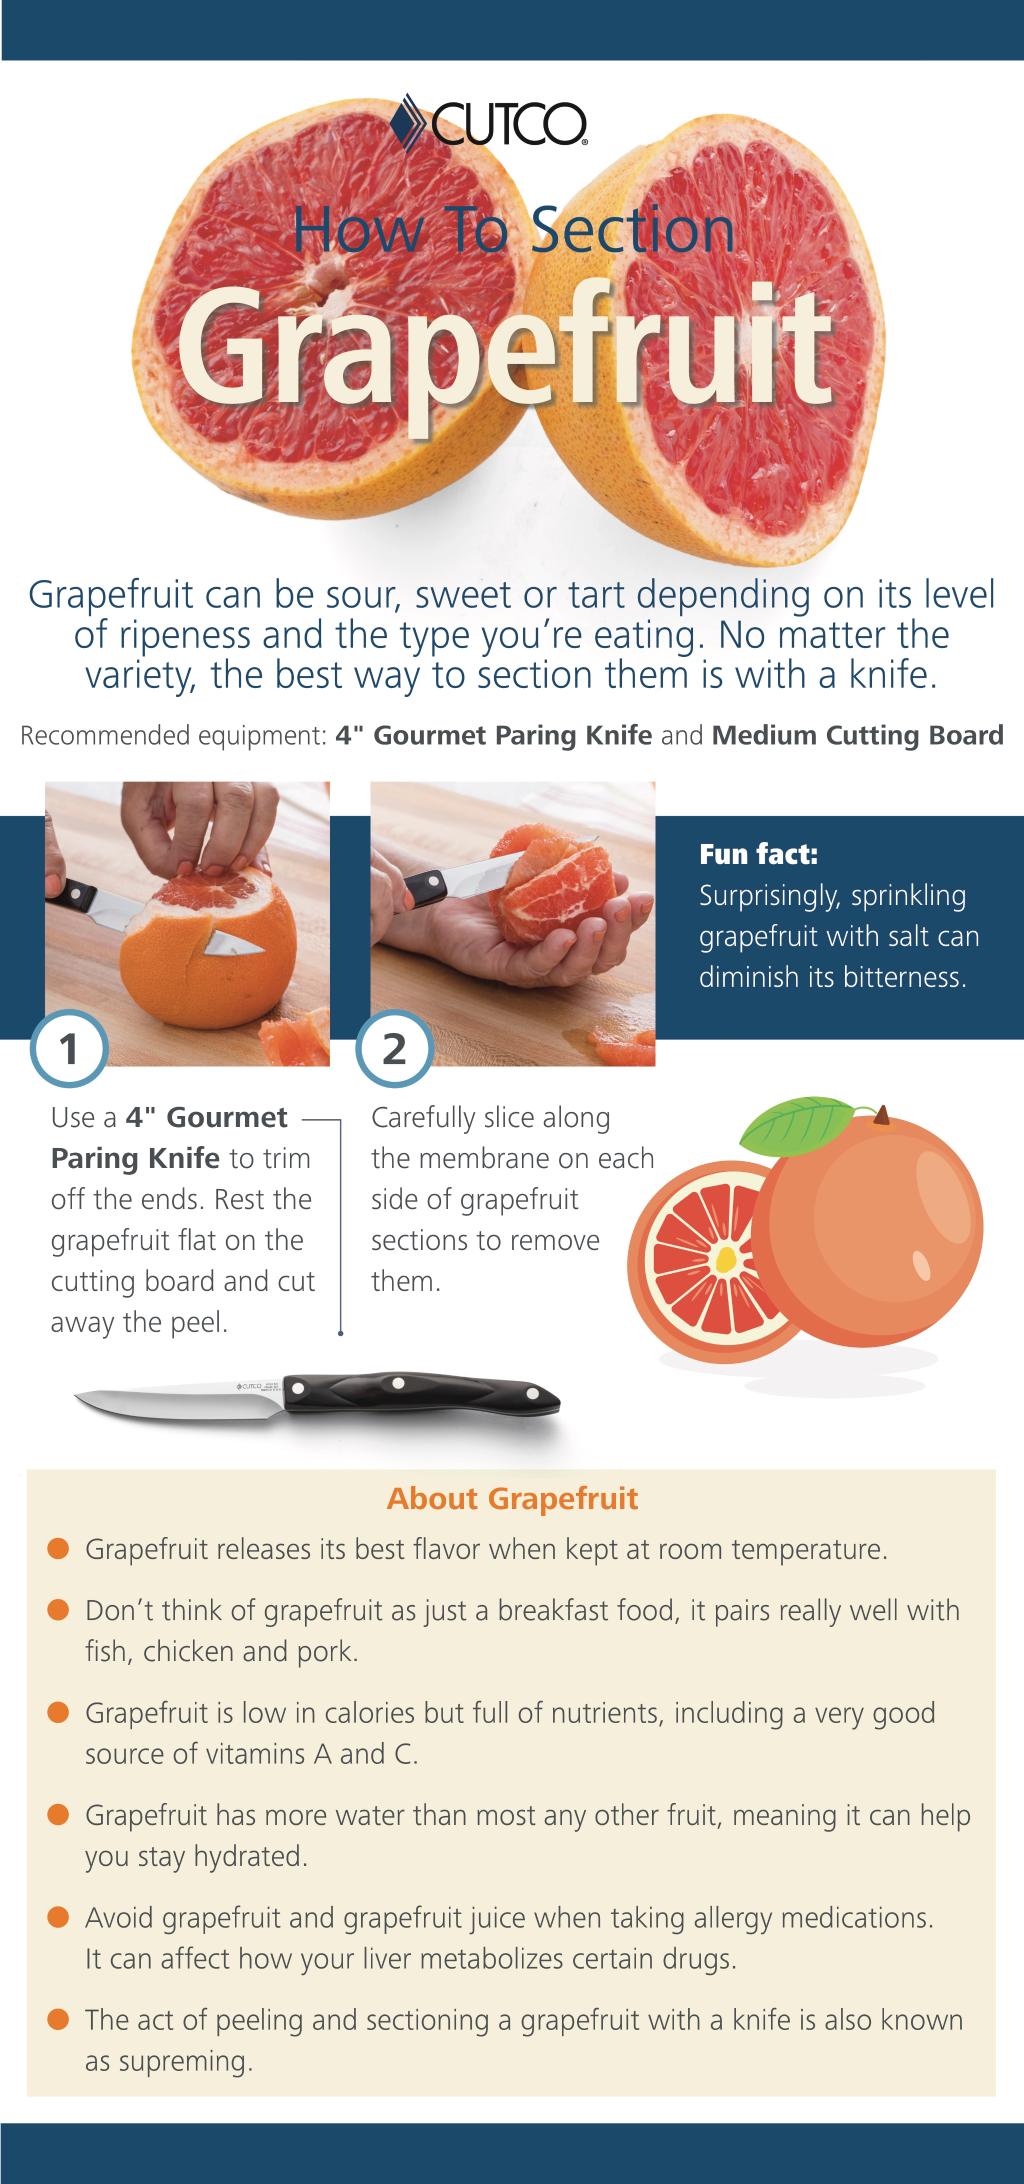 grapefruit method quote